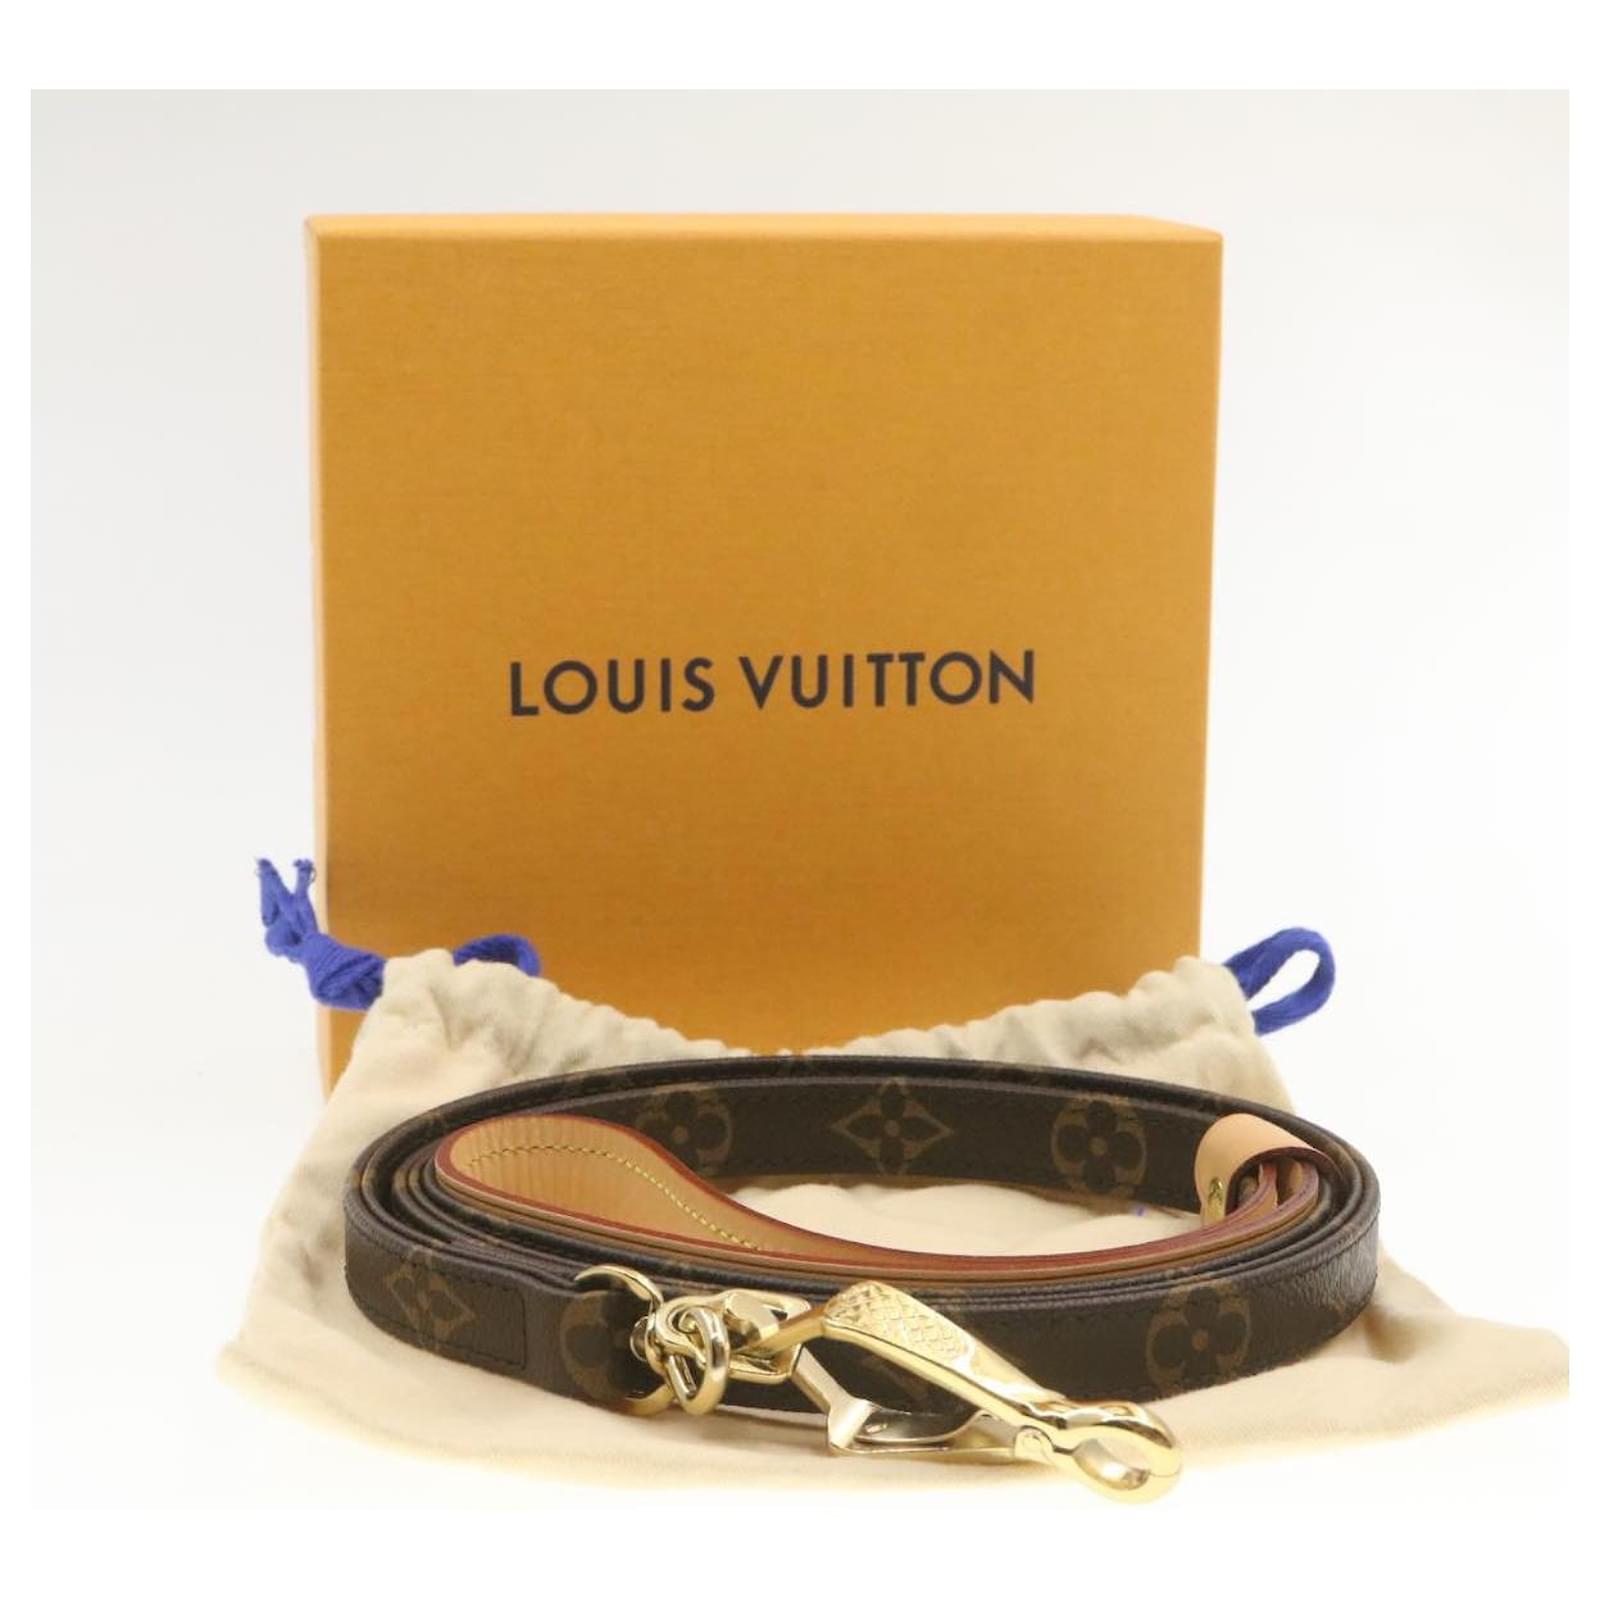 Louis Vuitton Hundeleine - Catawiki